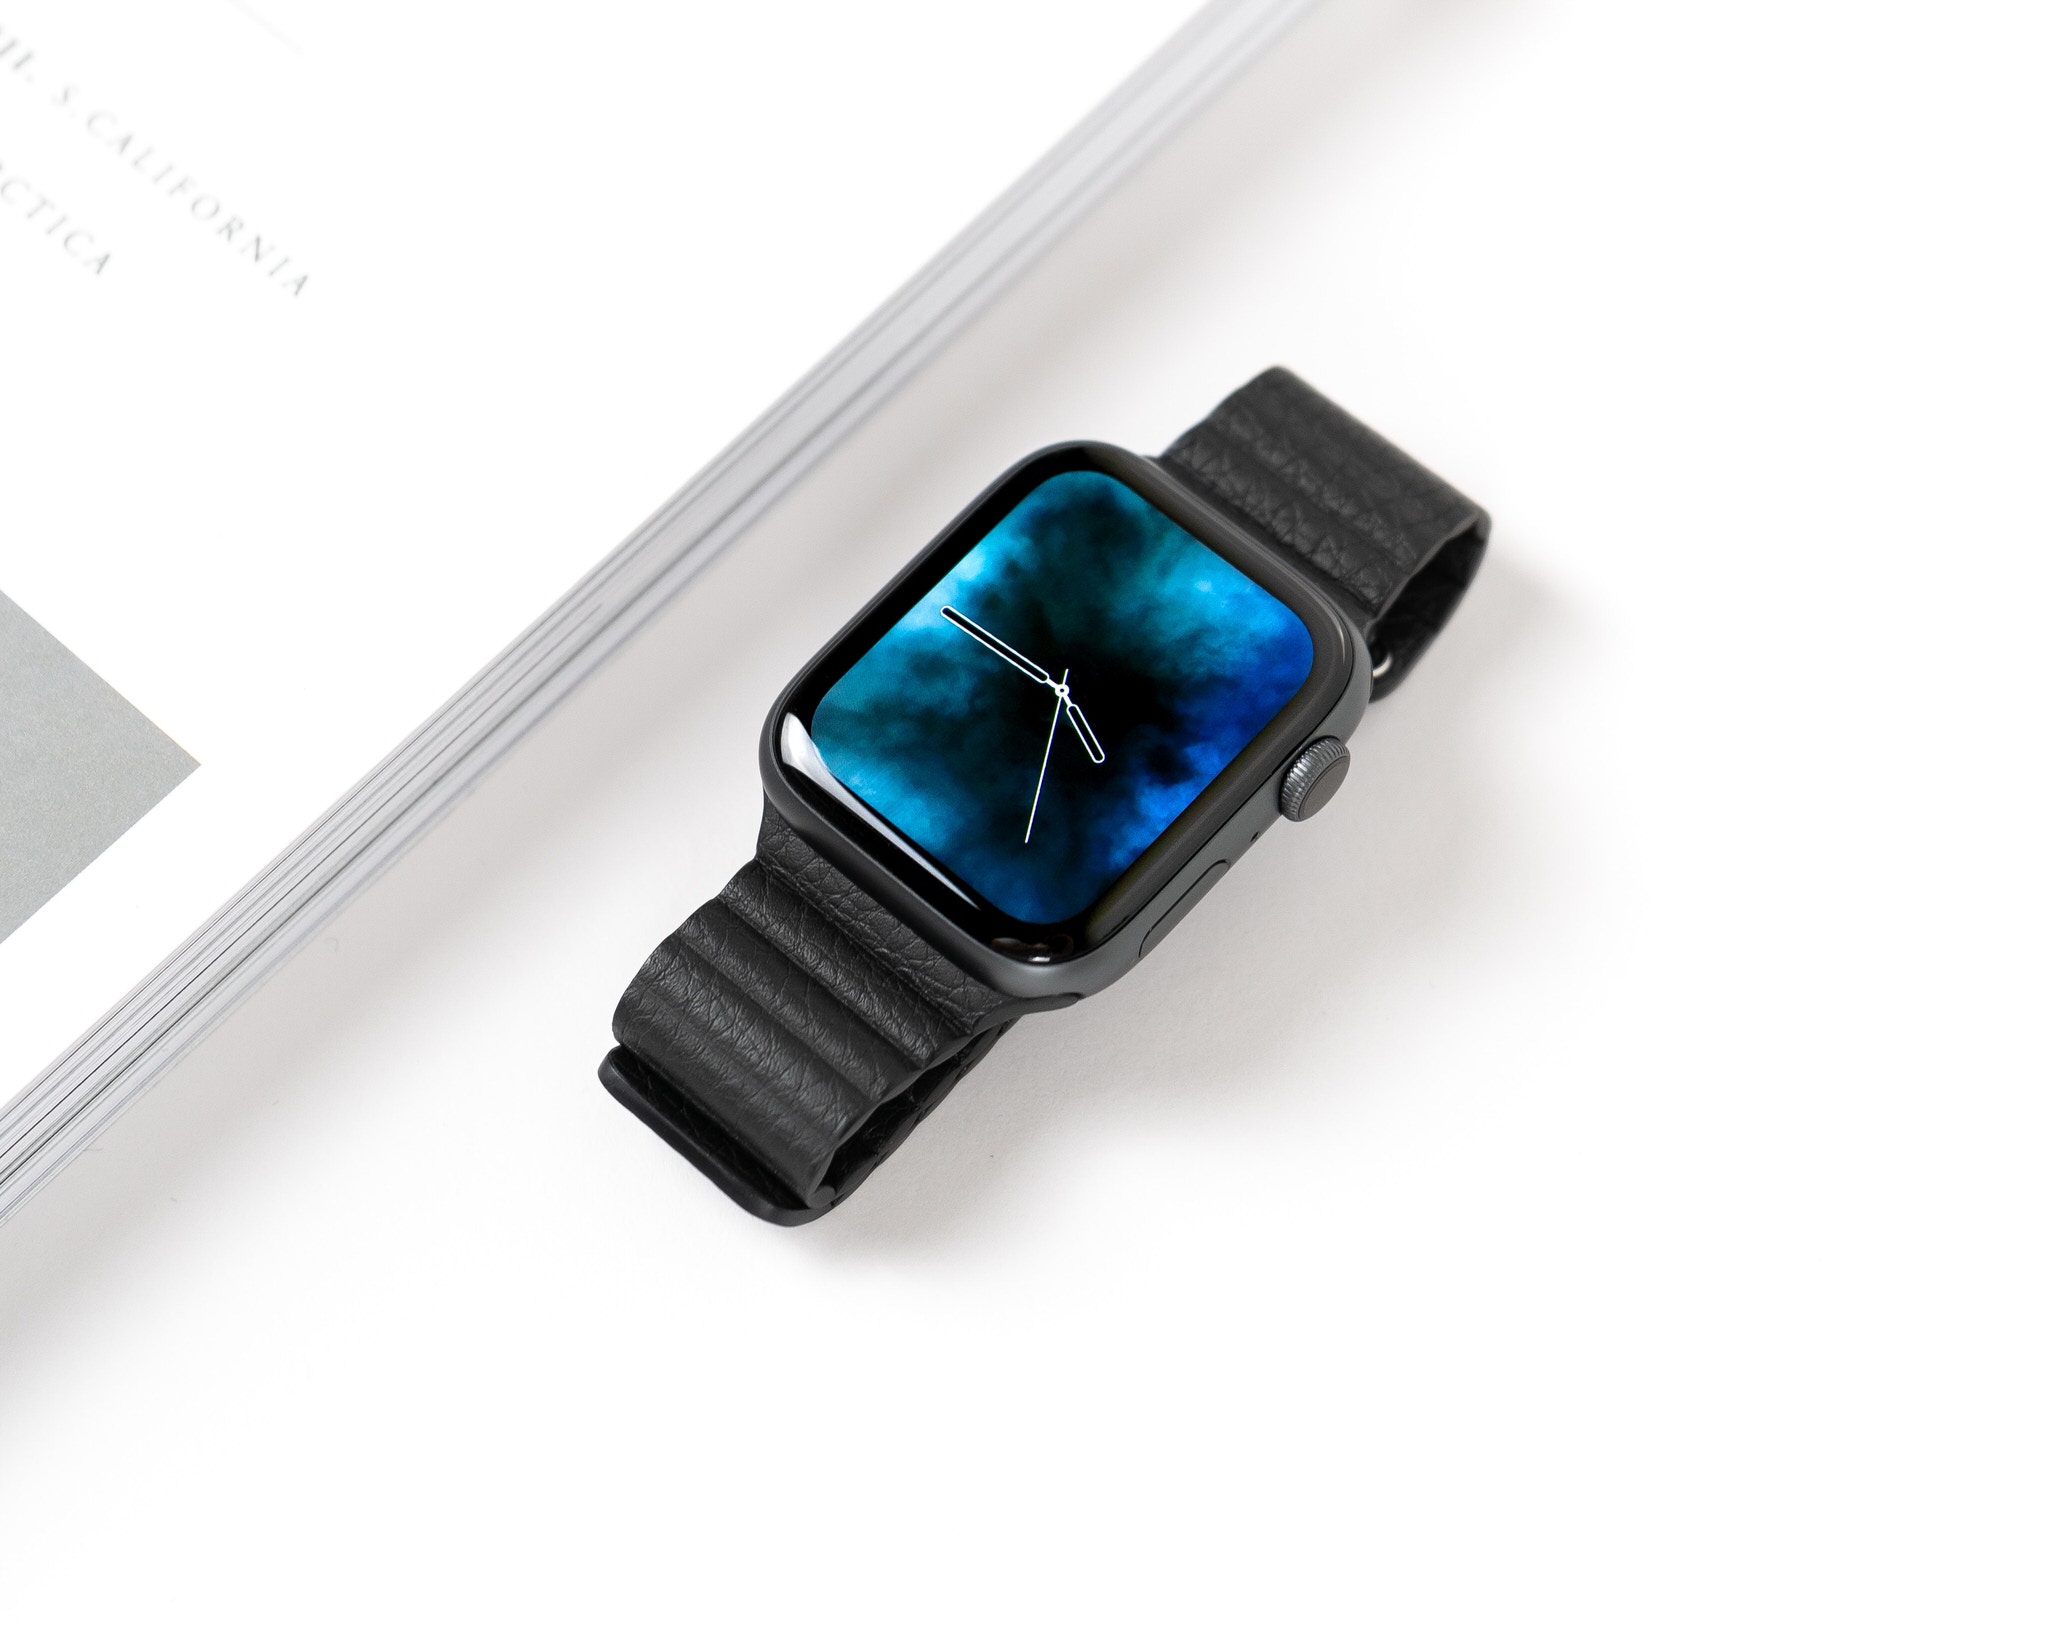 Apple vẫn đang dẫn đầu trên thị trường smartwatch, bỏ xa các đối thủ